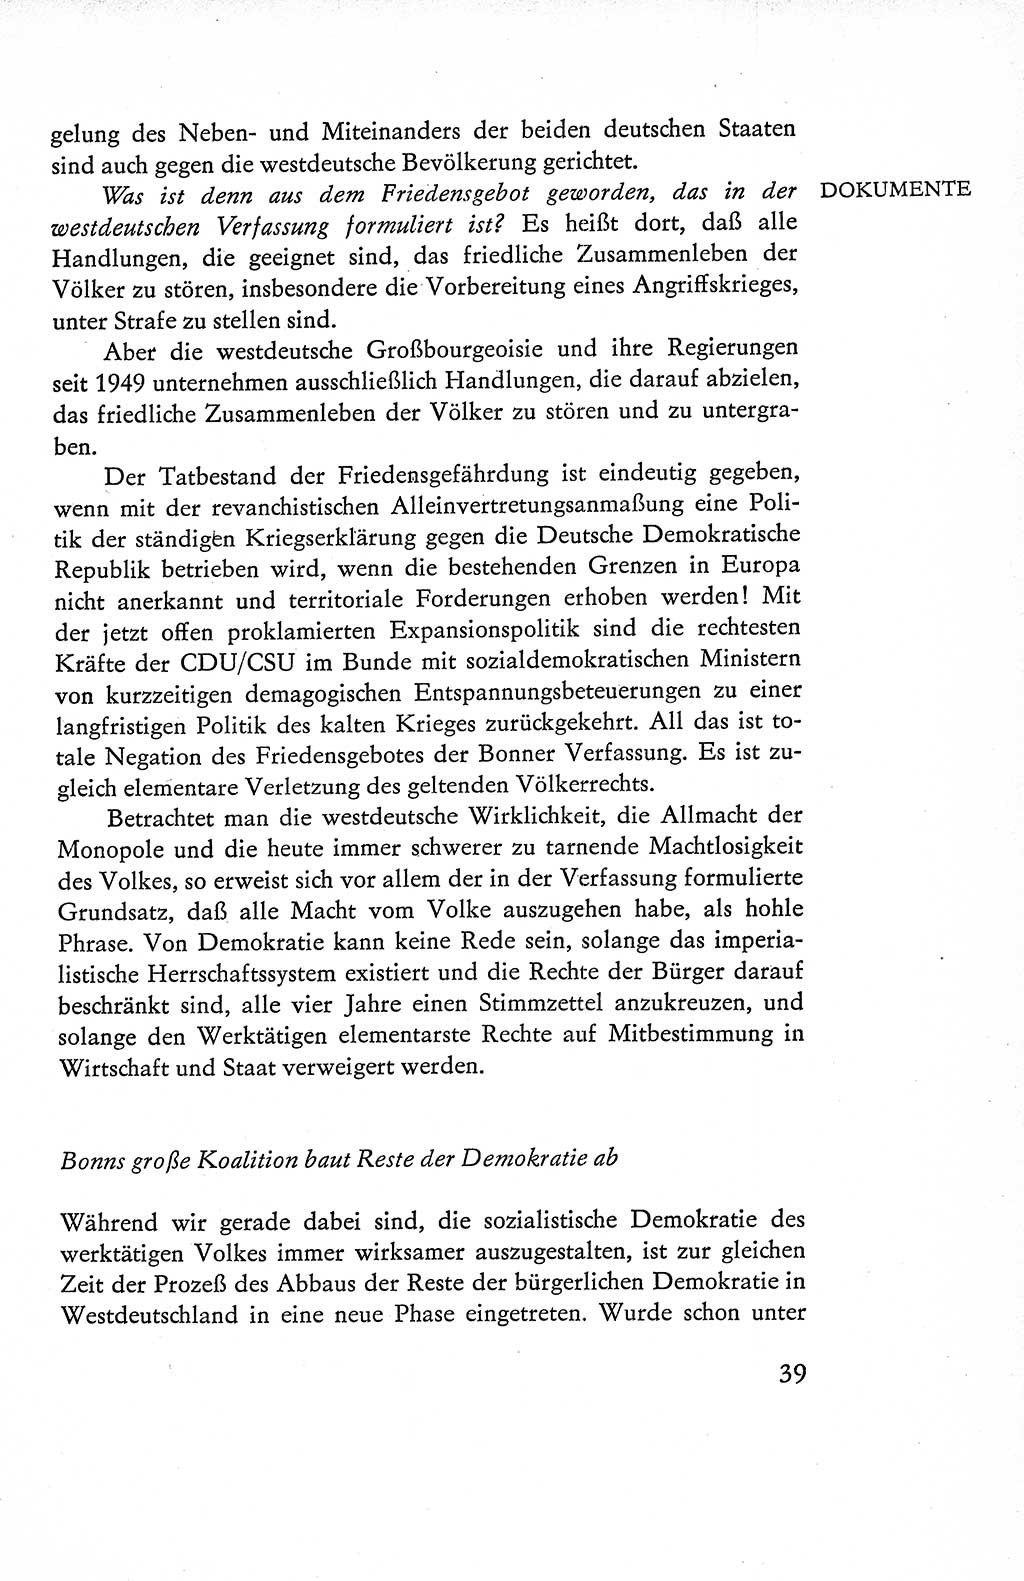 Verfassung der Deutschen Demokratischen Republik (DDR), Dokumente, Kommentar 1969, Band 1, Seite 39 (Verf. DDR Dok. Komm. 1969, Bd. 1, S. 39)